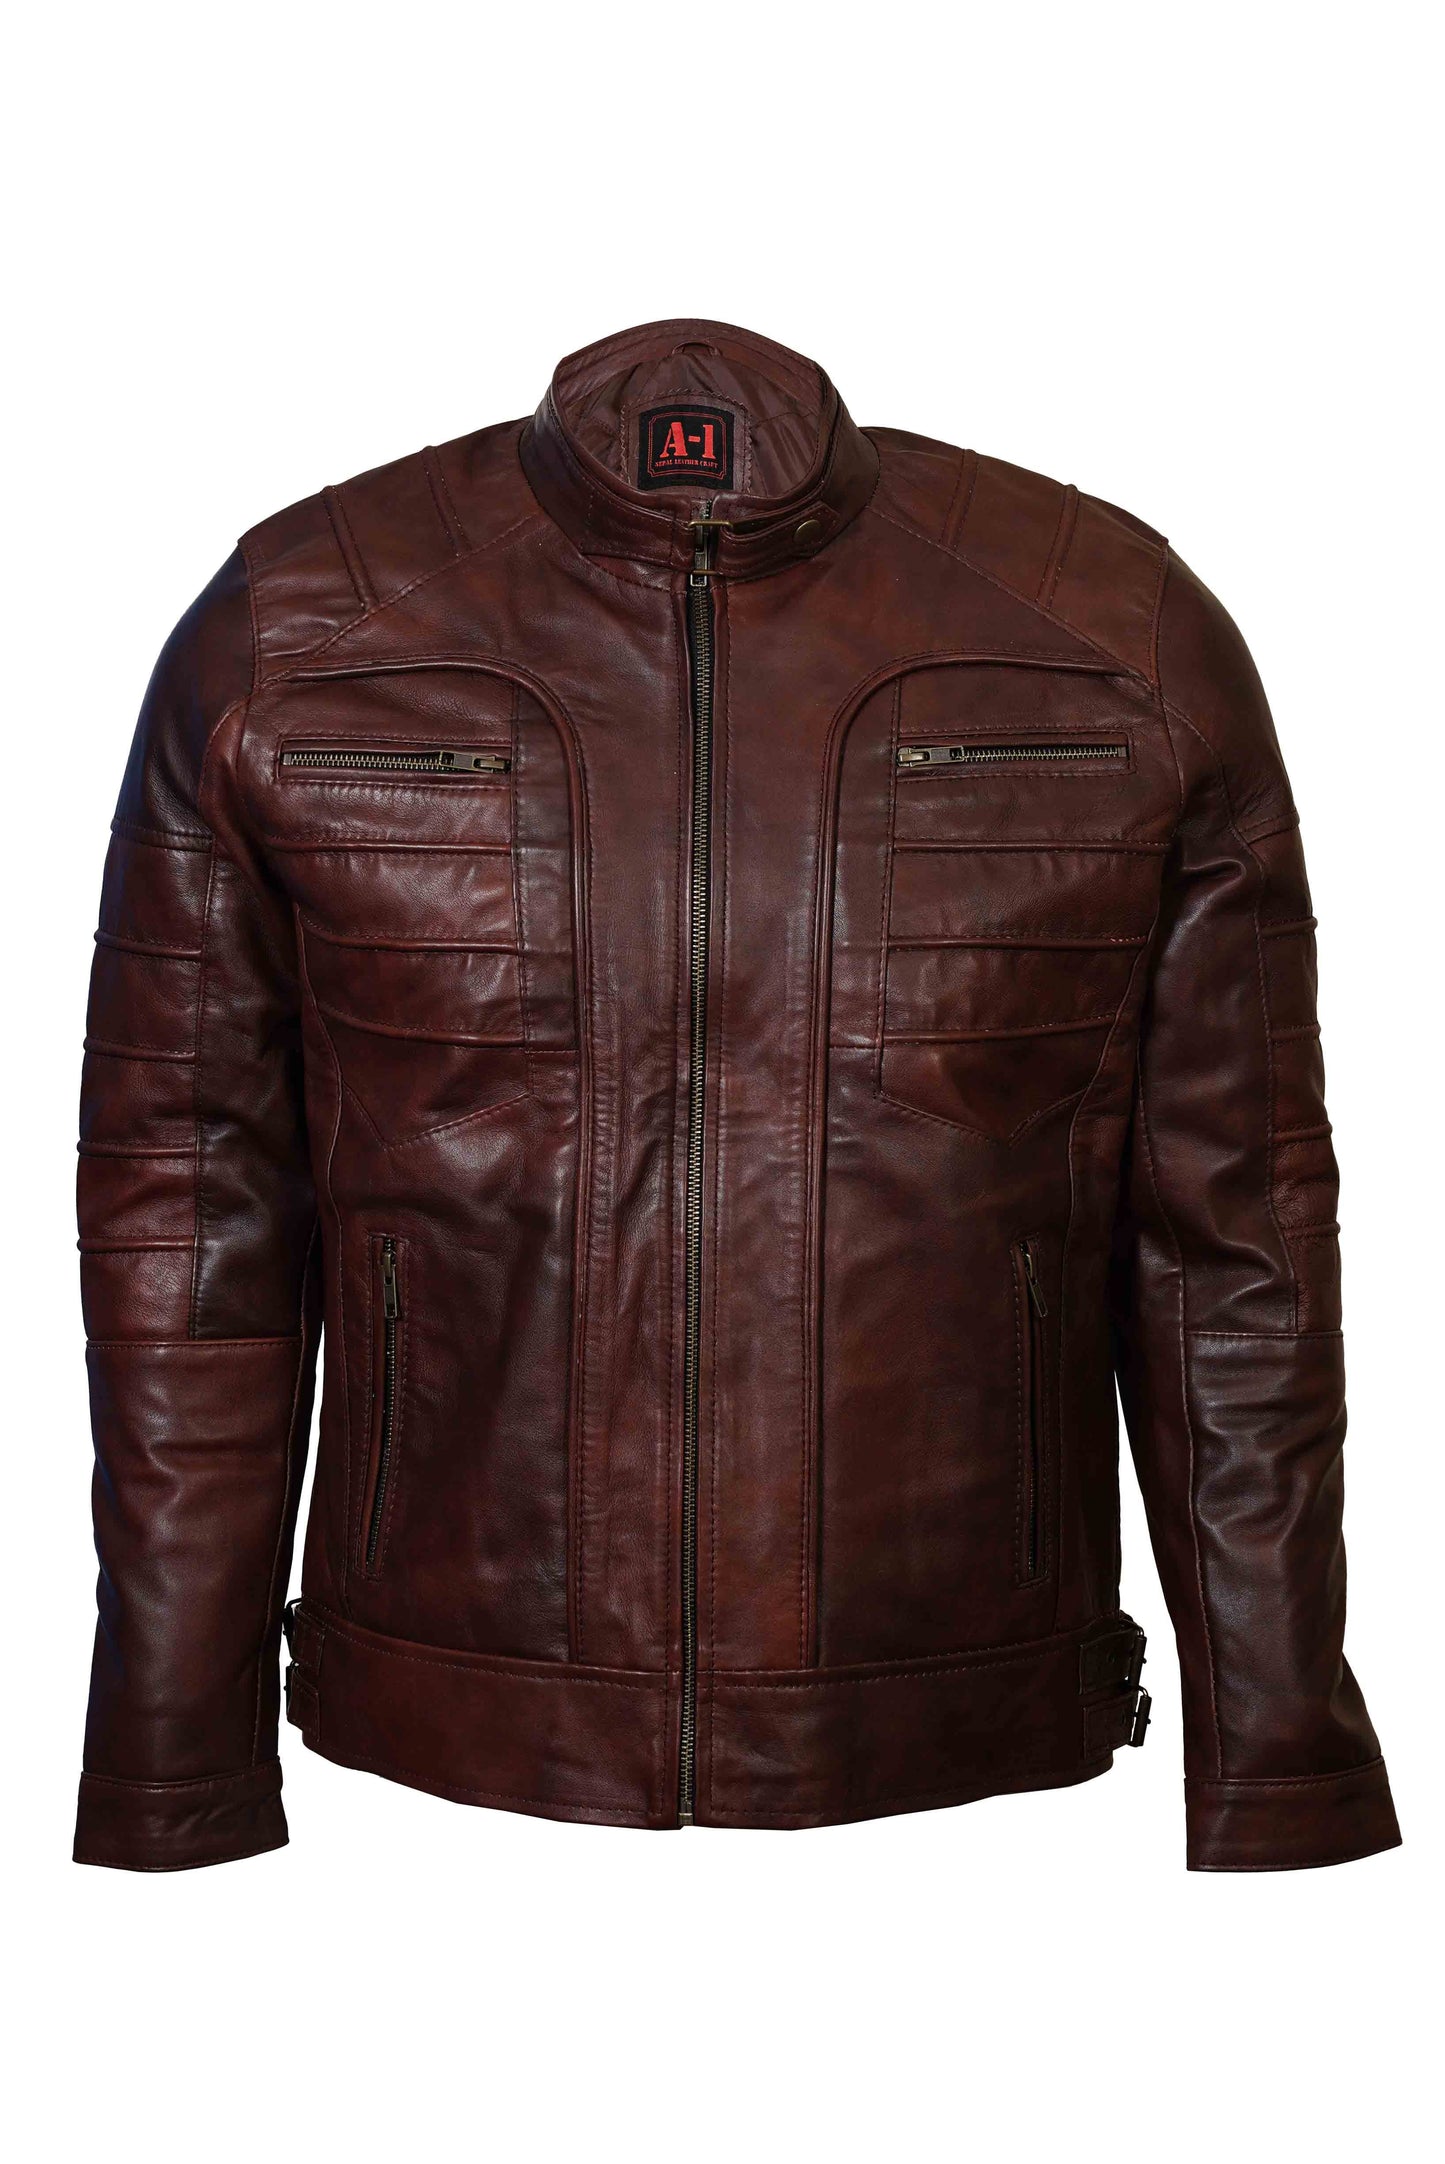 Buy Best Fashion Leather jacket